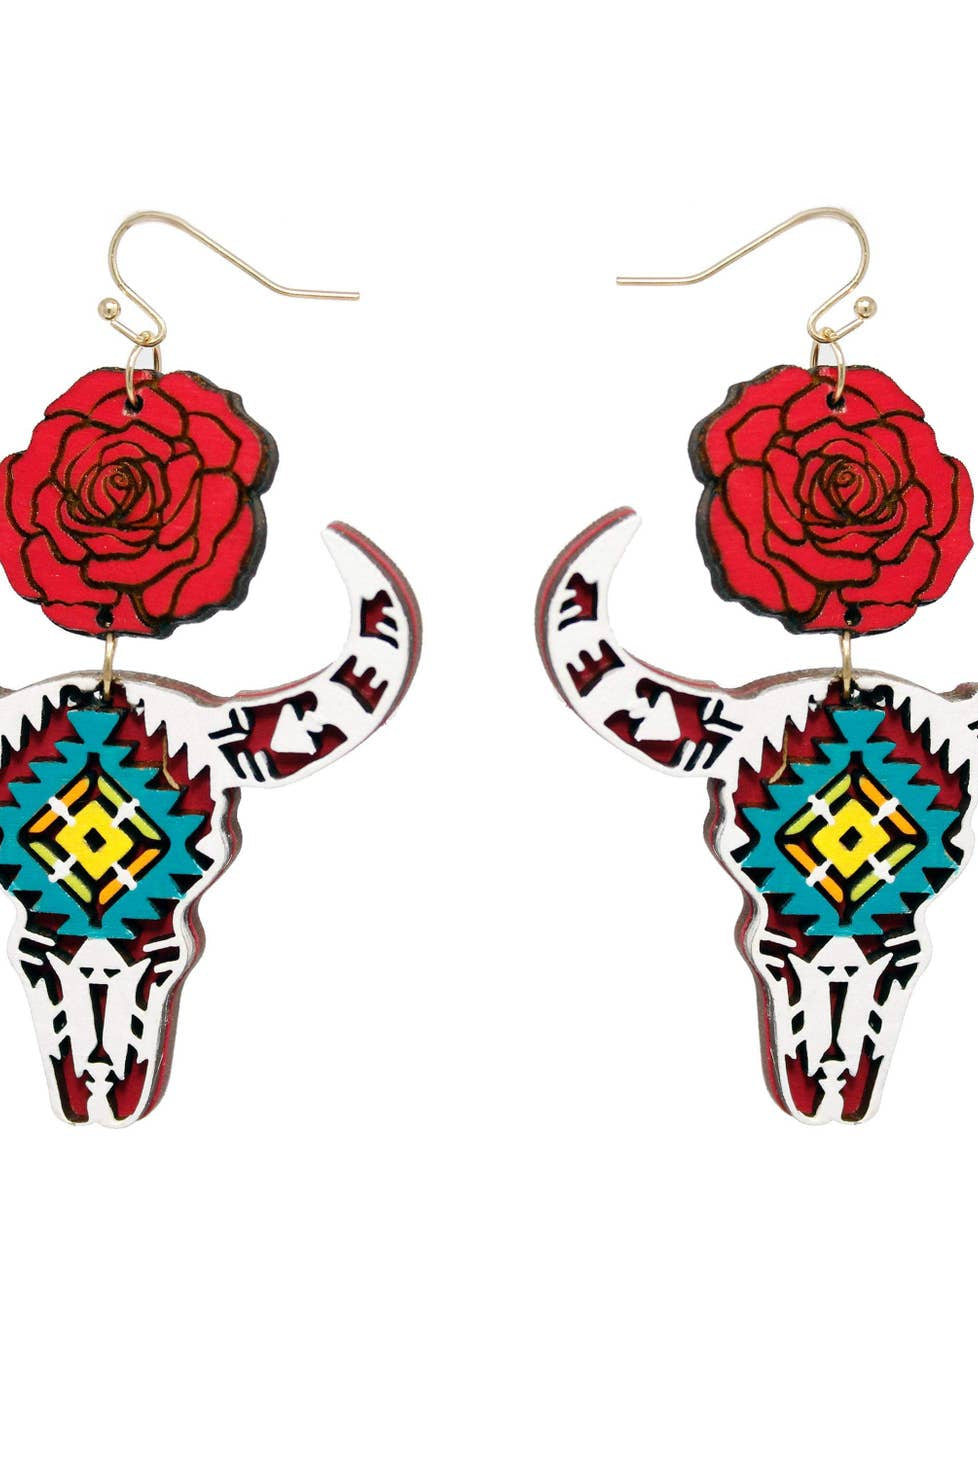 
  
  Cow Skull Rose Hoop Earrings
  
